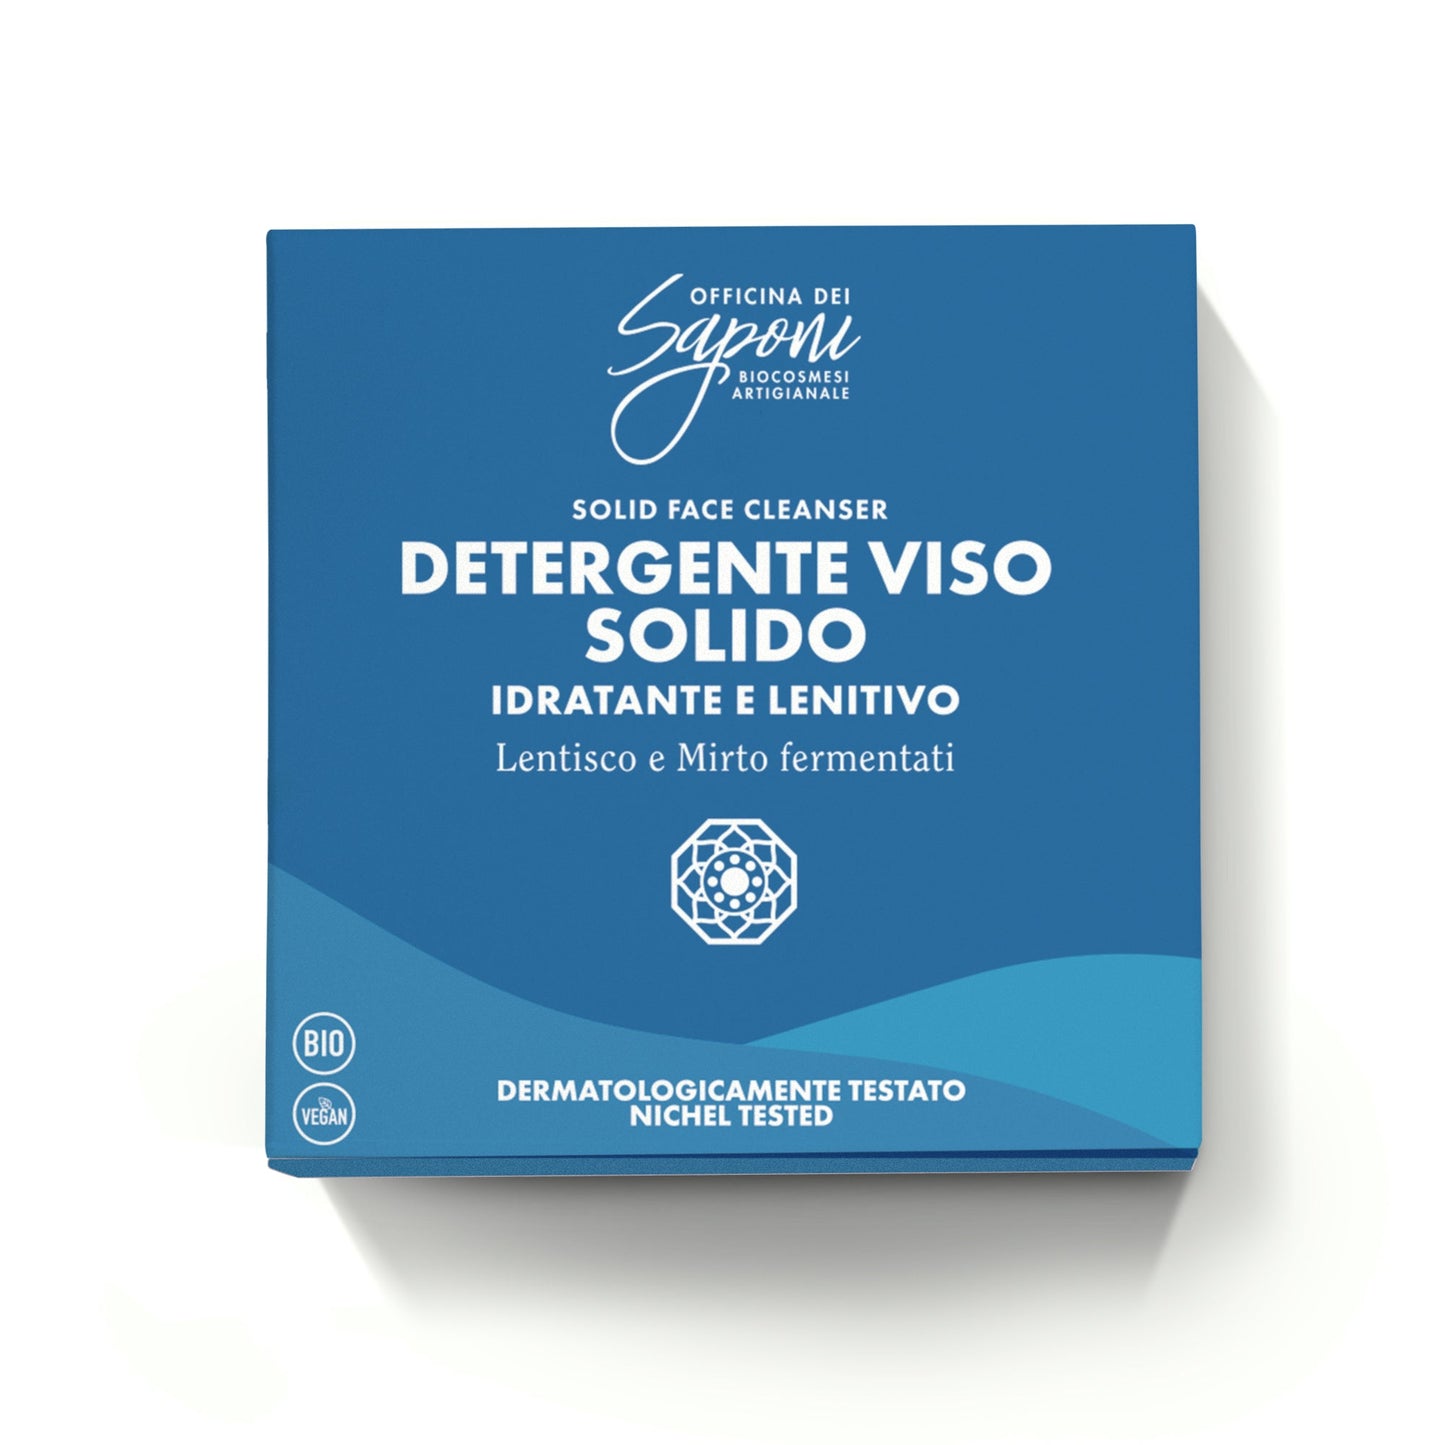 B2B - Detergente Viso Solido Idratante Lenitivo